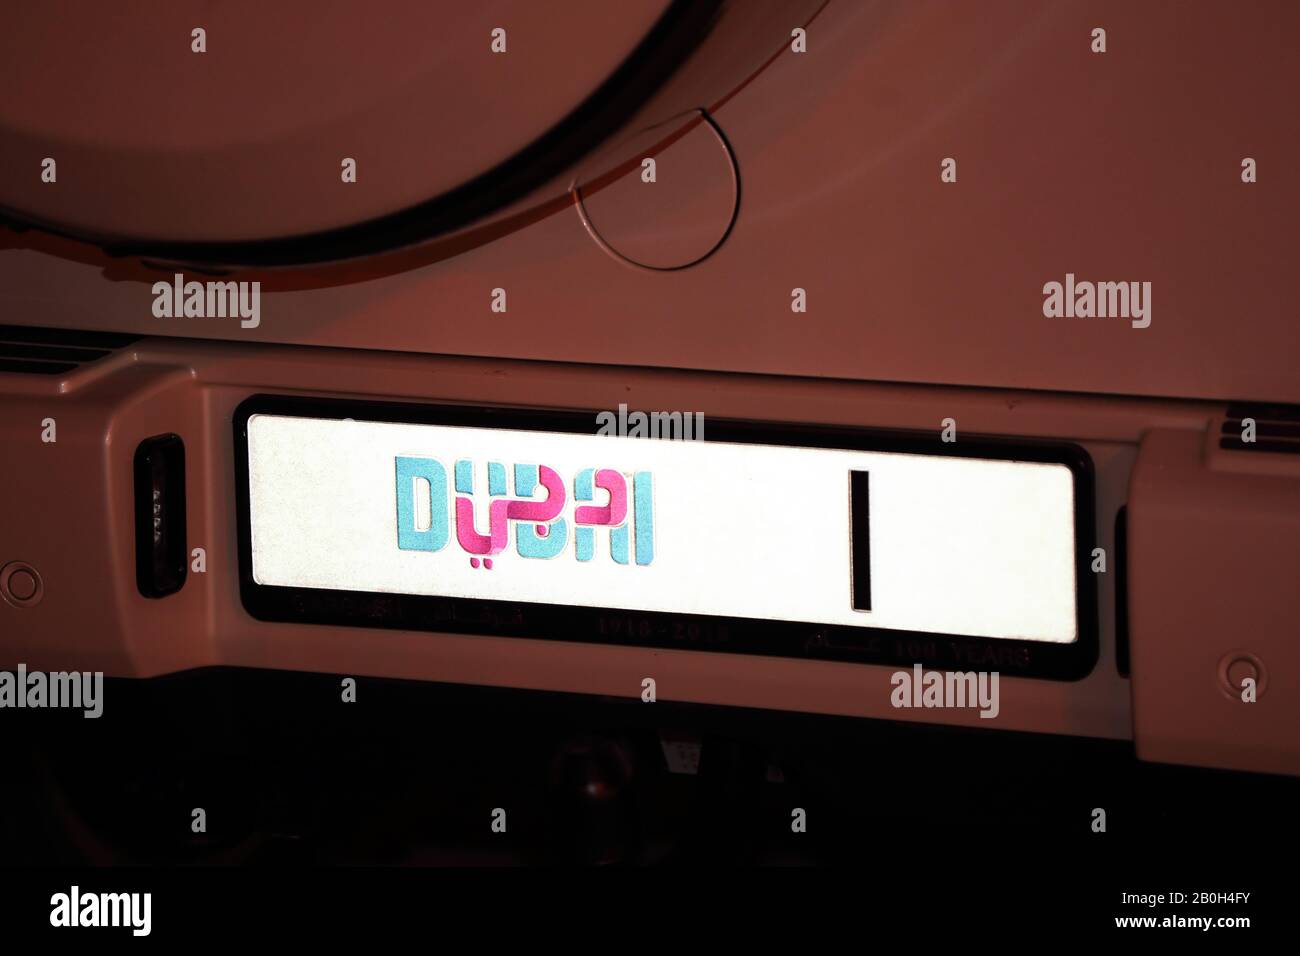 28.03.2019, Dubai, Vereinigte Arabische Emirate - Kennzeichen an einem Auto. 00S190328D039CAROEX.JPG [MODEL RELEASE: Nein, PROPERTY RELEASE: No (c) caro images / Stockfoto